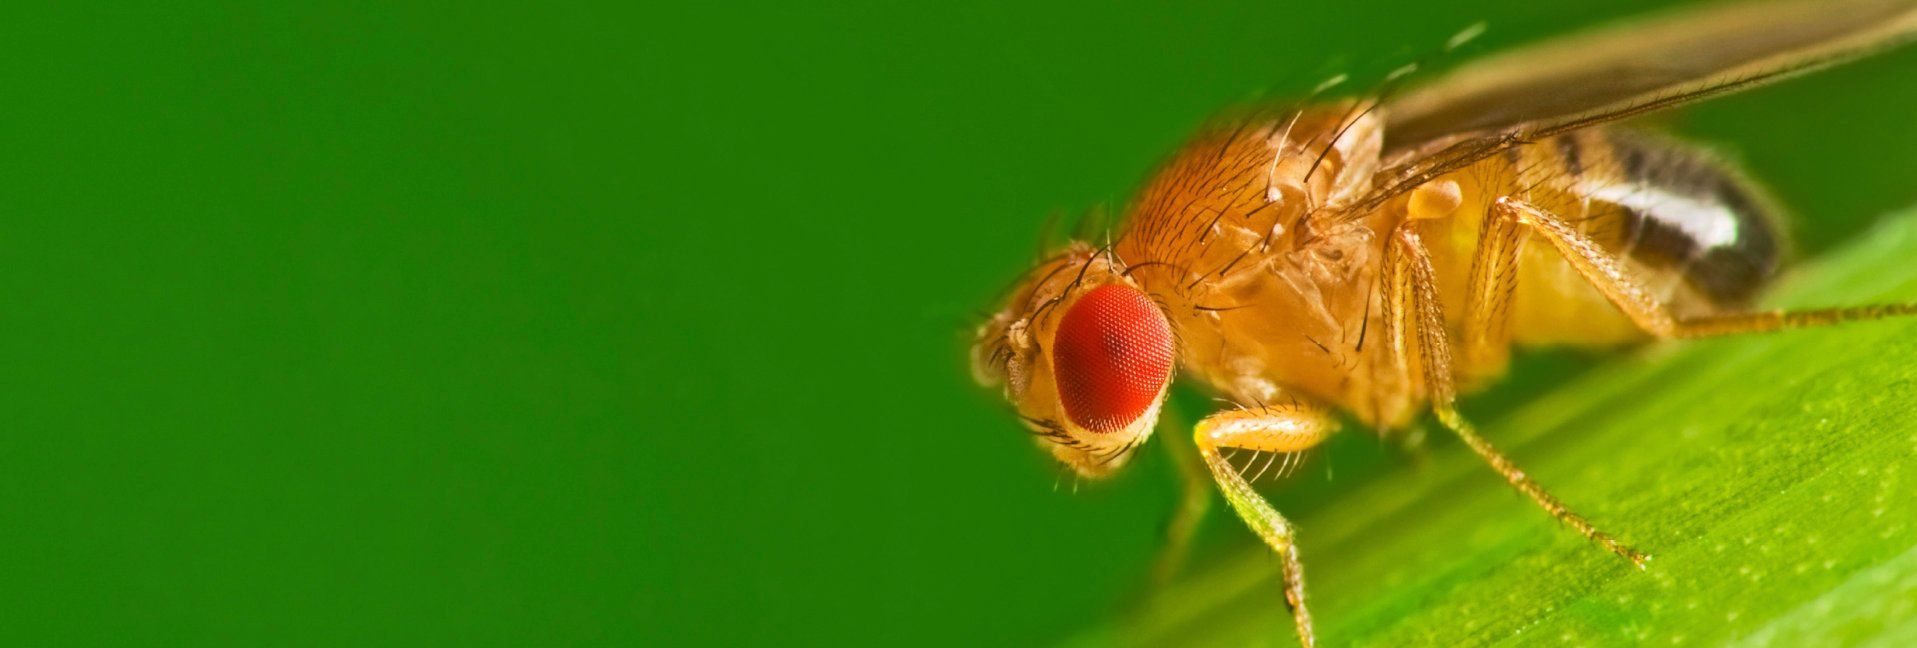 5 Tips for Preventing Fruit Flies